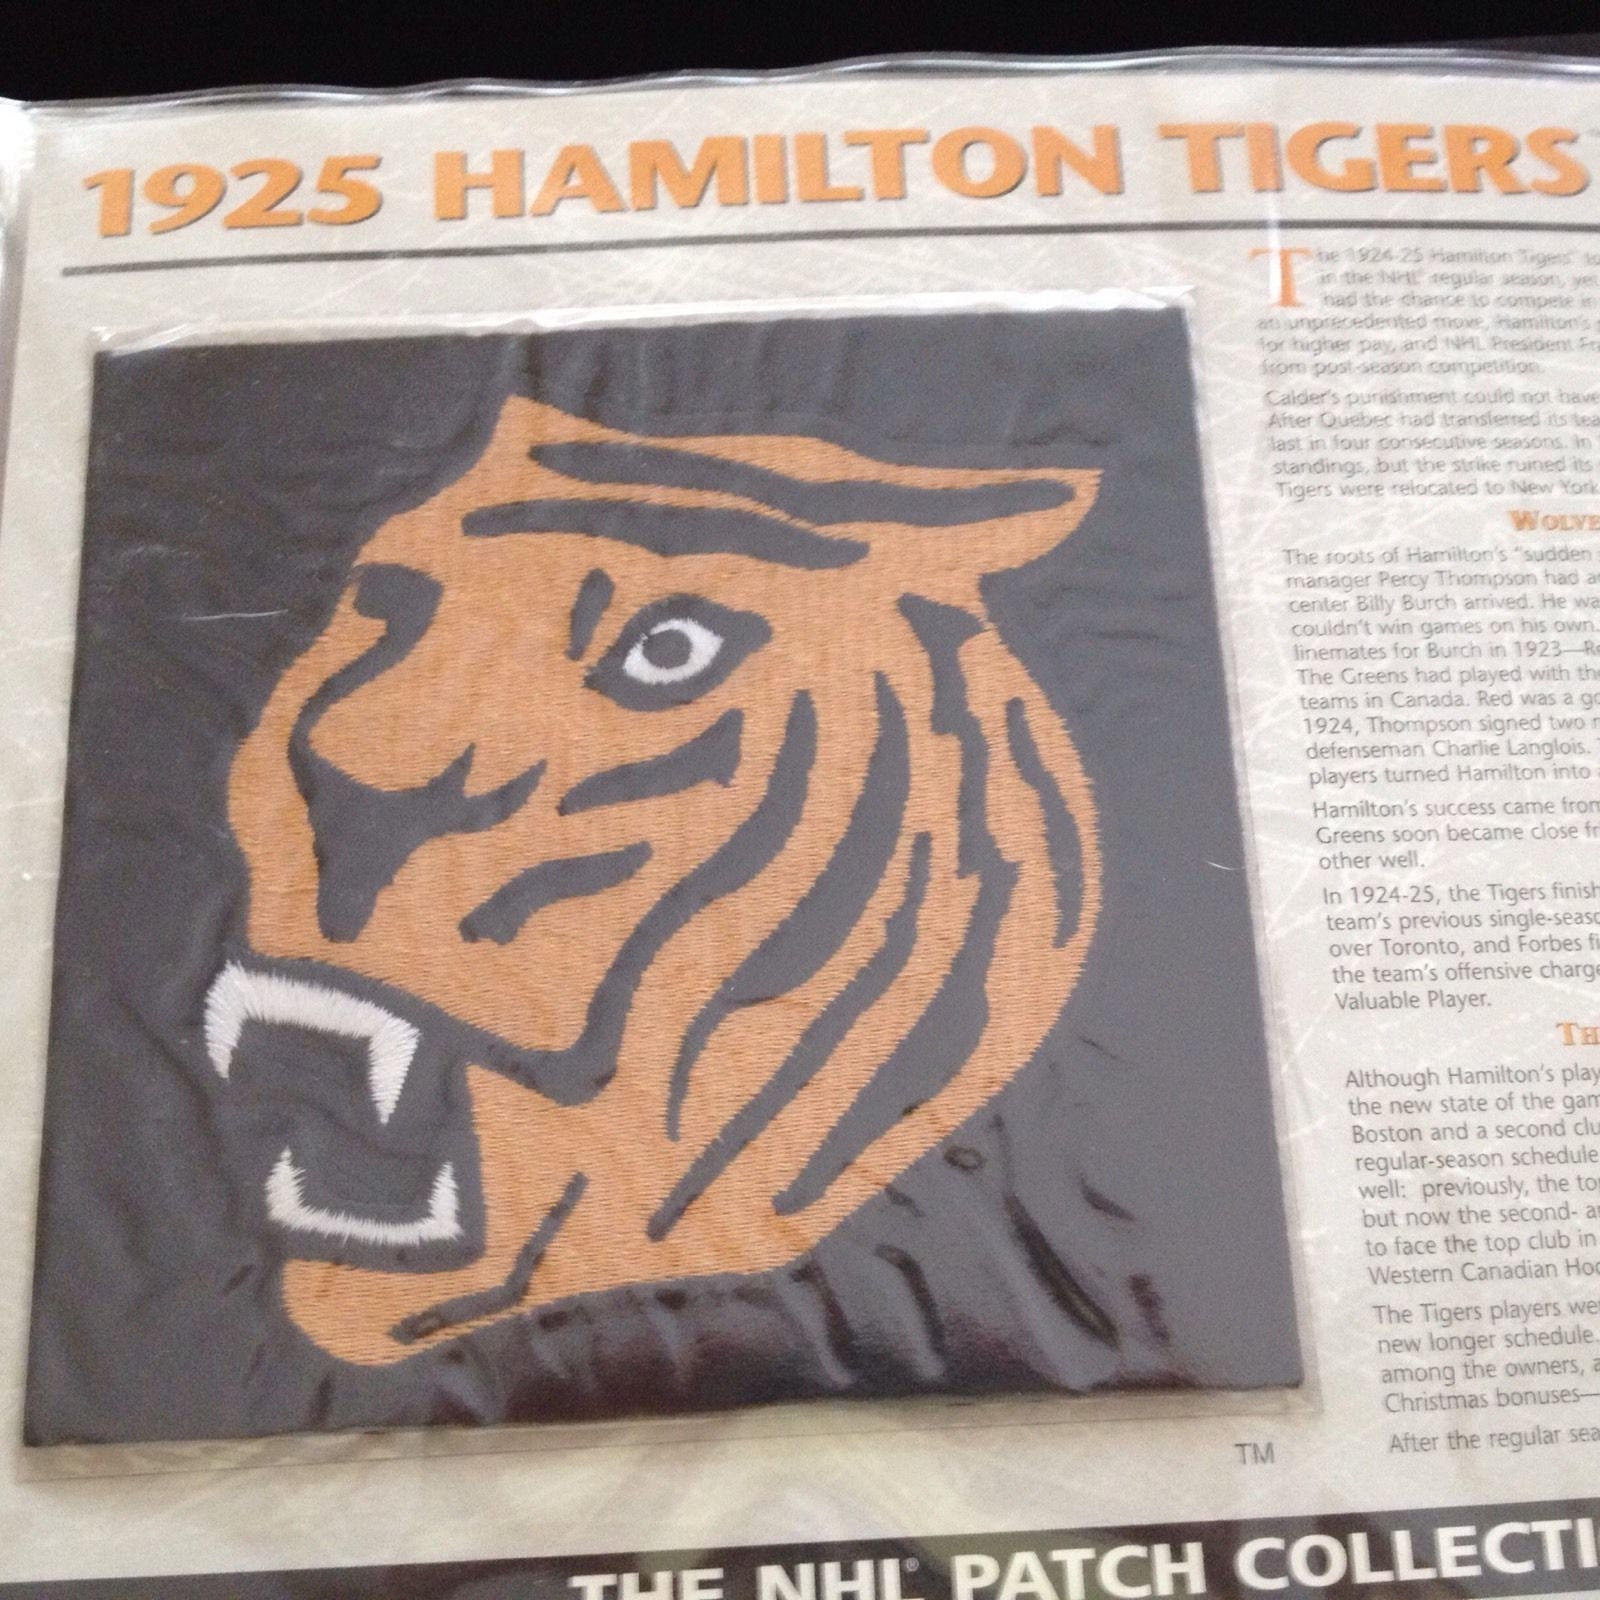 Bring Back The Hamilton - Bring Back The Hamilton Tigers